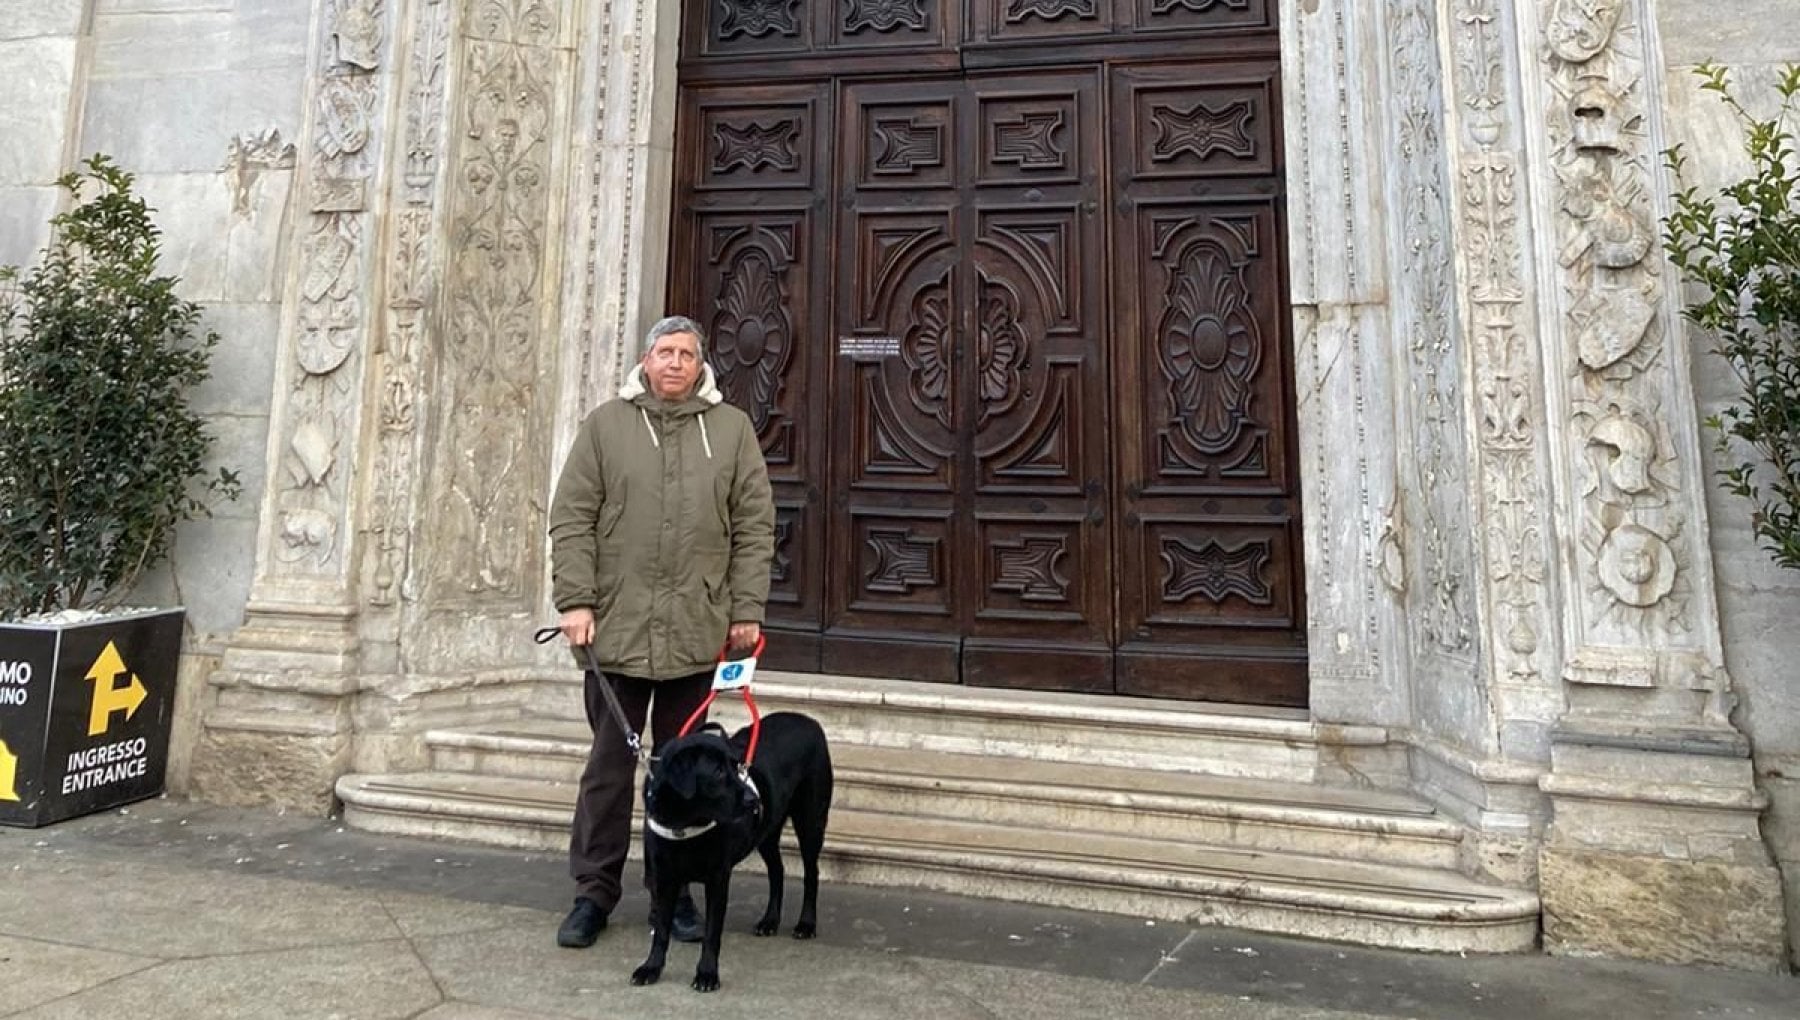 Cieco bloccato al duomo di Torino con il suo cane guida: "L'animale non può entrare". Interviene la polizia